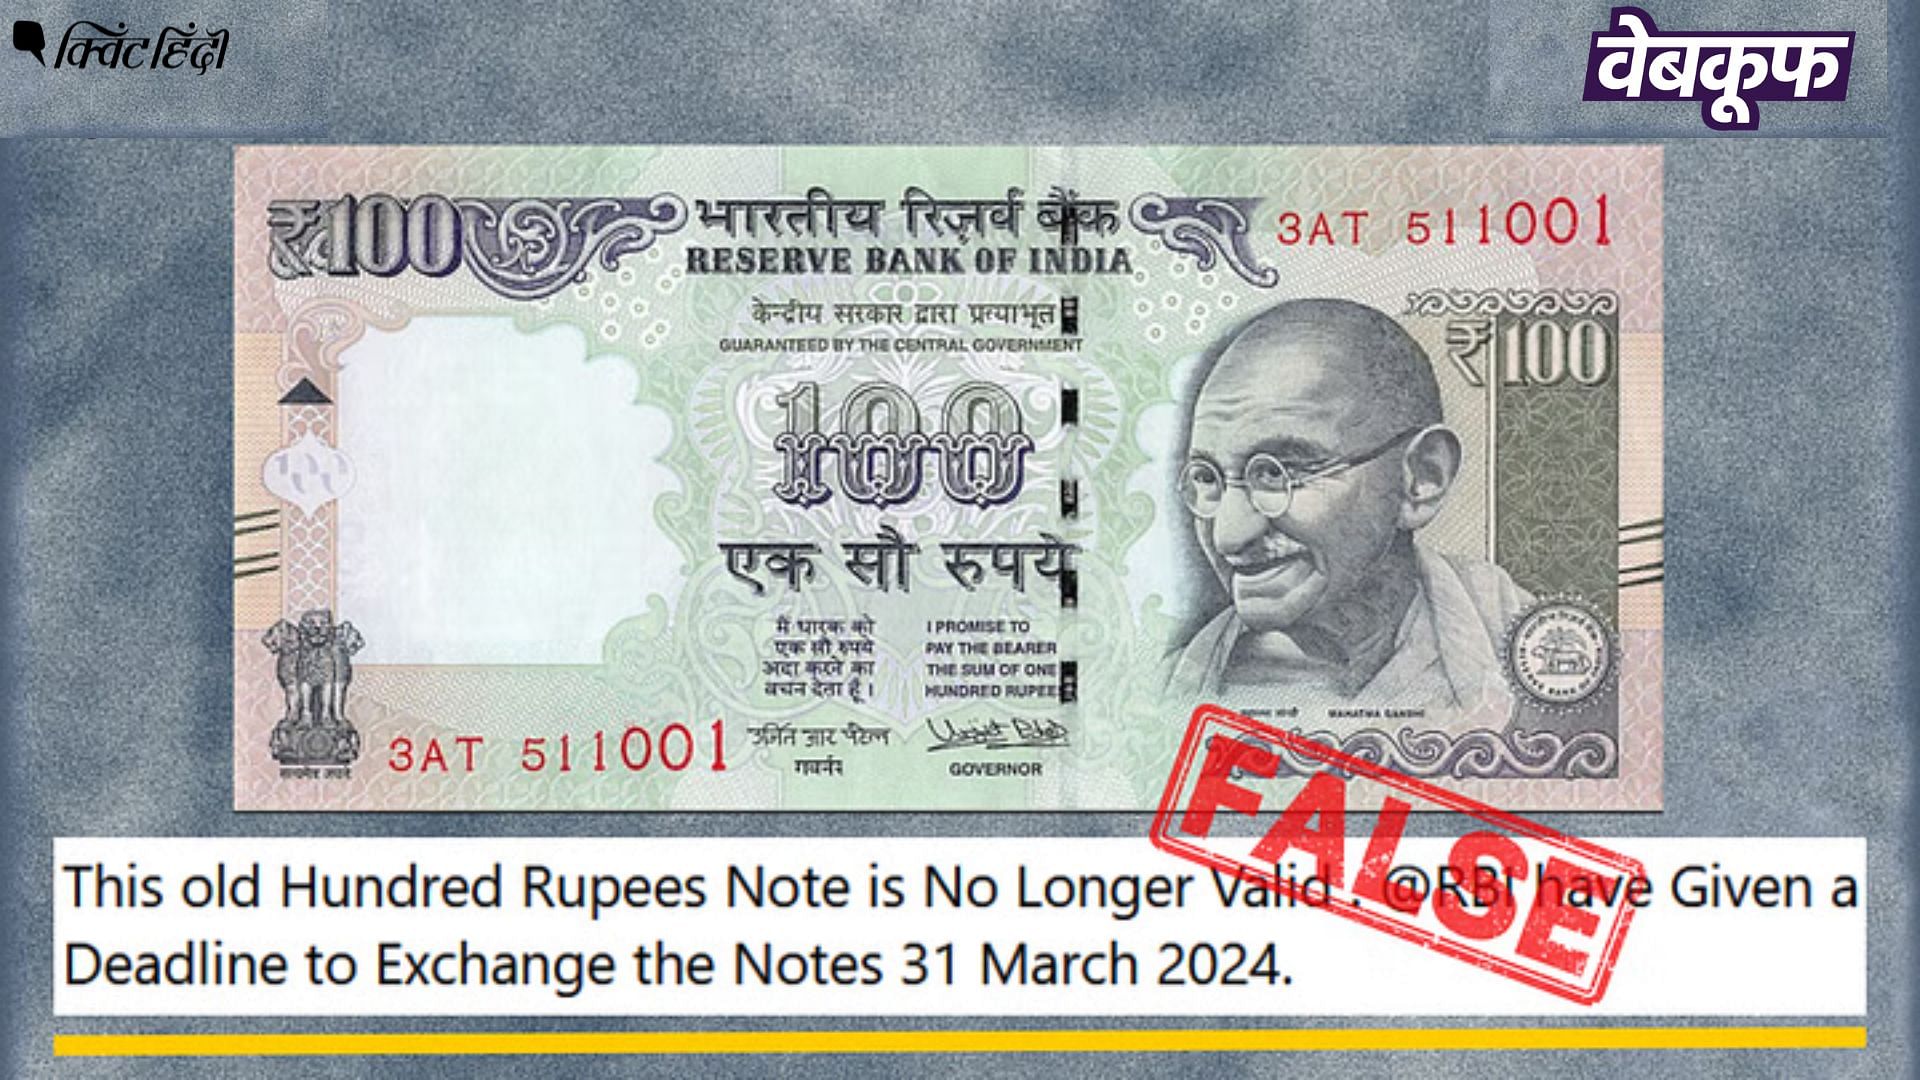 <div class="paragraphs"><p>Fact Check: RBI ने पुराने 100 रुपये के नोट बंद नहीं किए, यह वायरल दावा गलत है!</p></div>